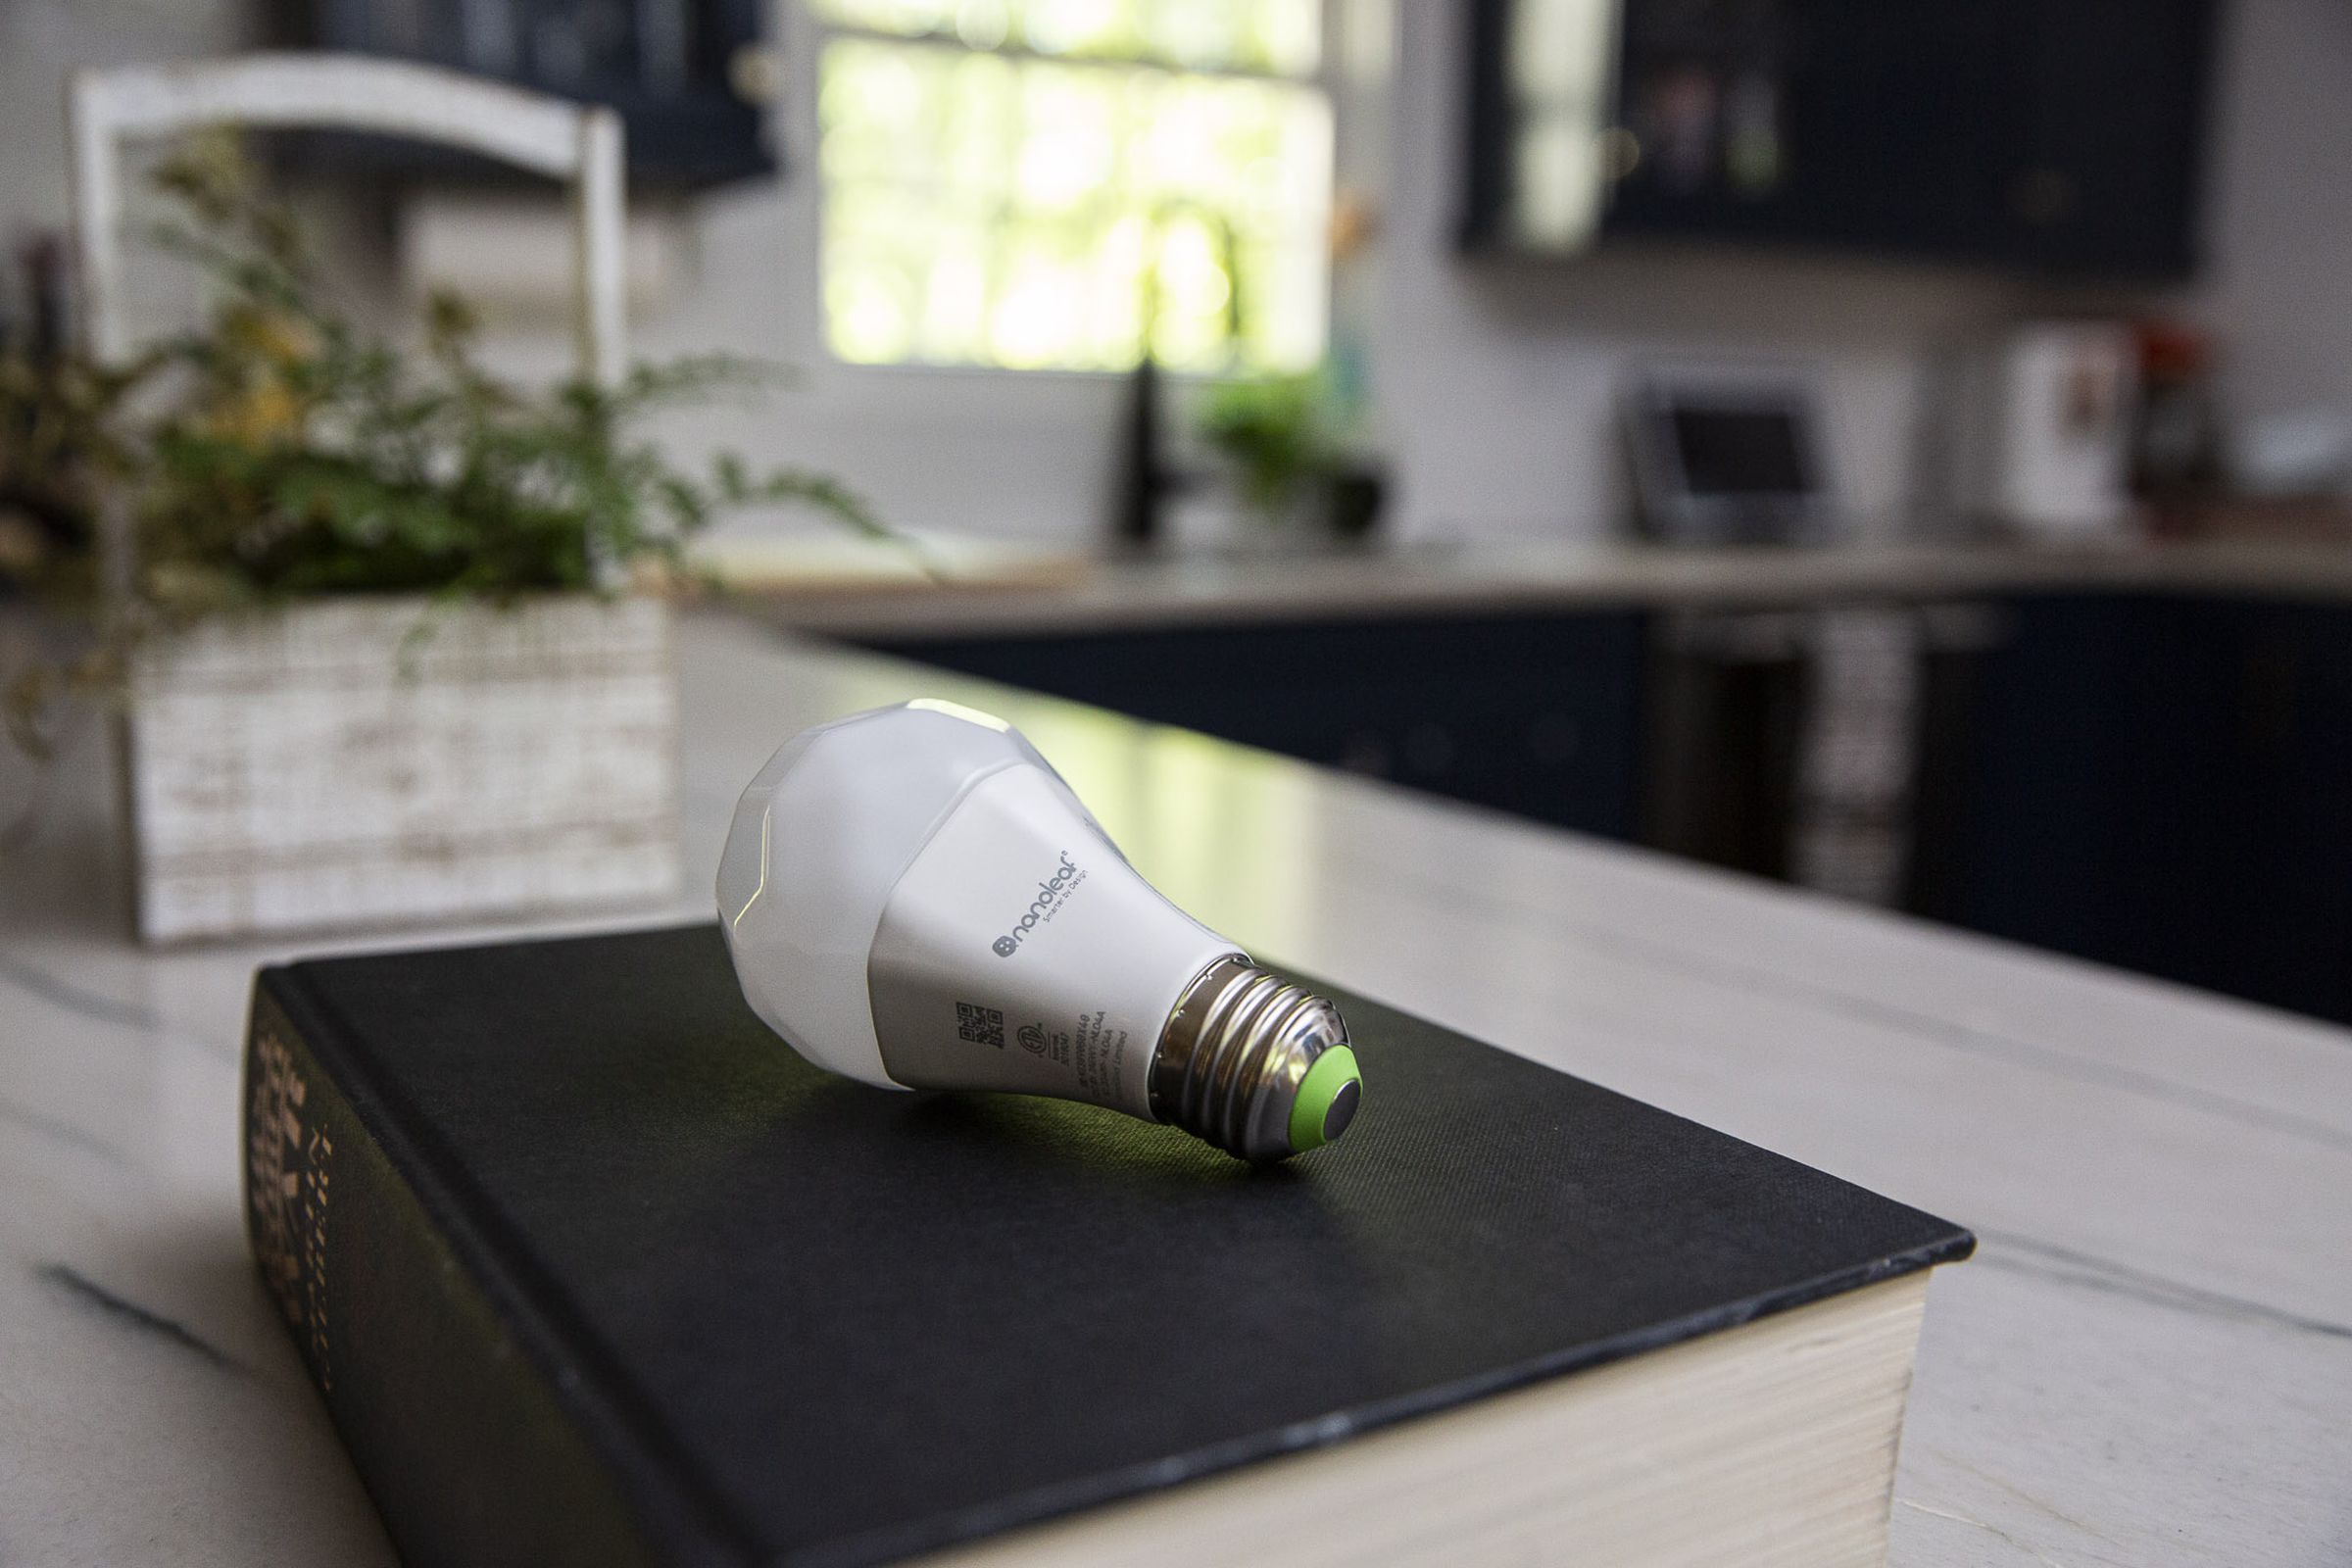 A Nanoleaf Essentials Matter A19 light bulb on a black book on a kitchen counter.